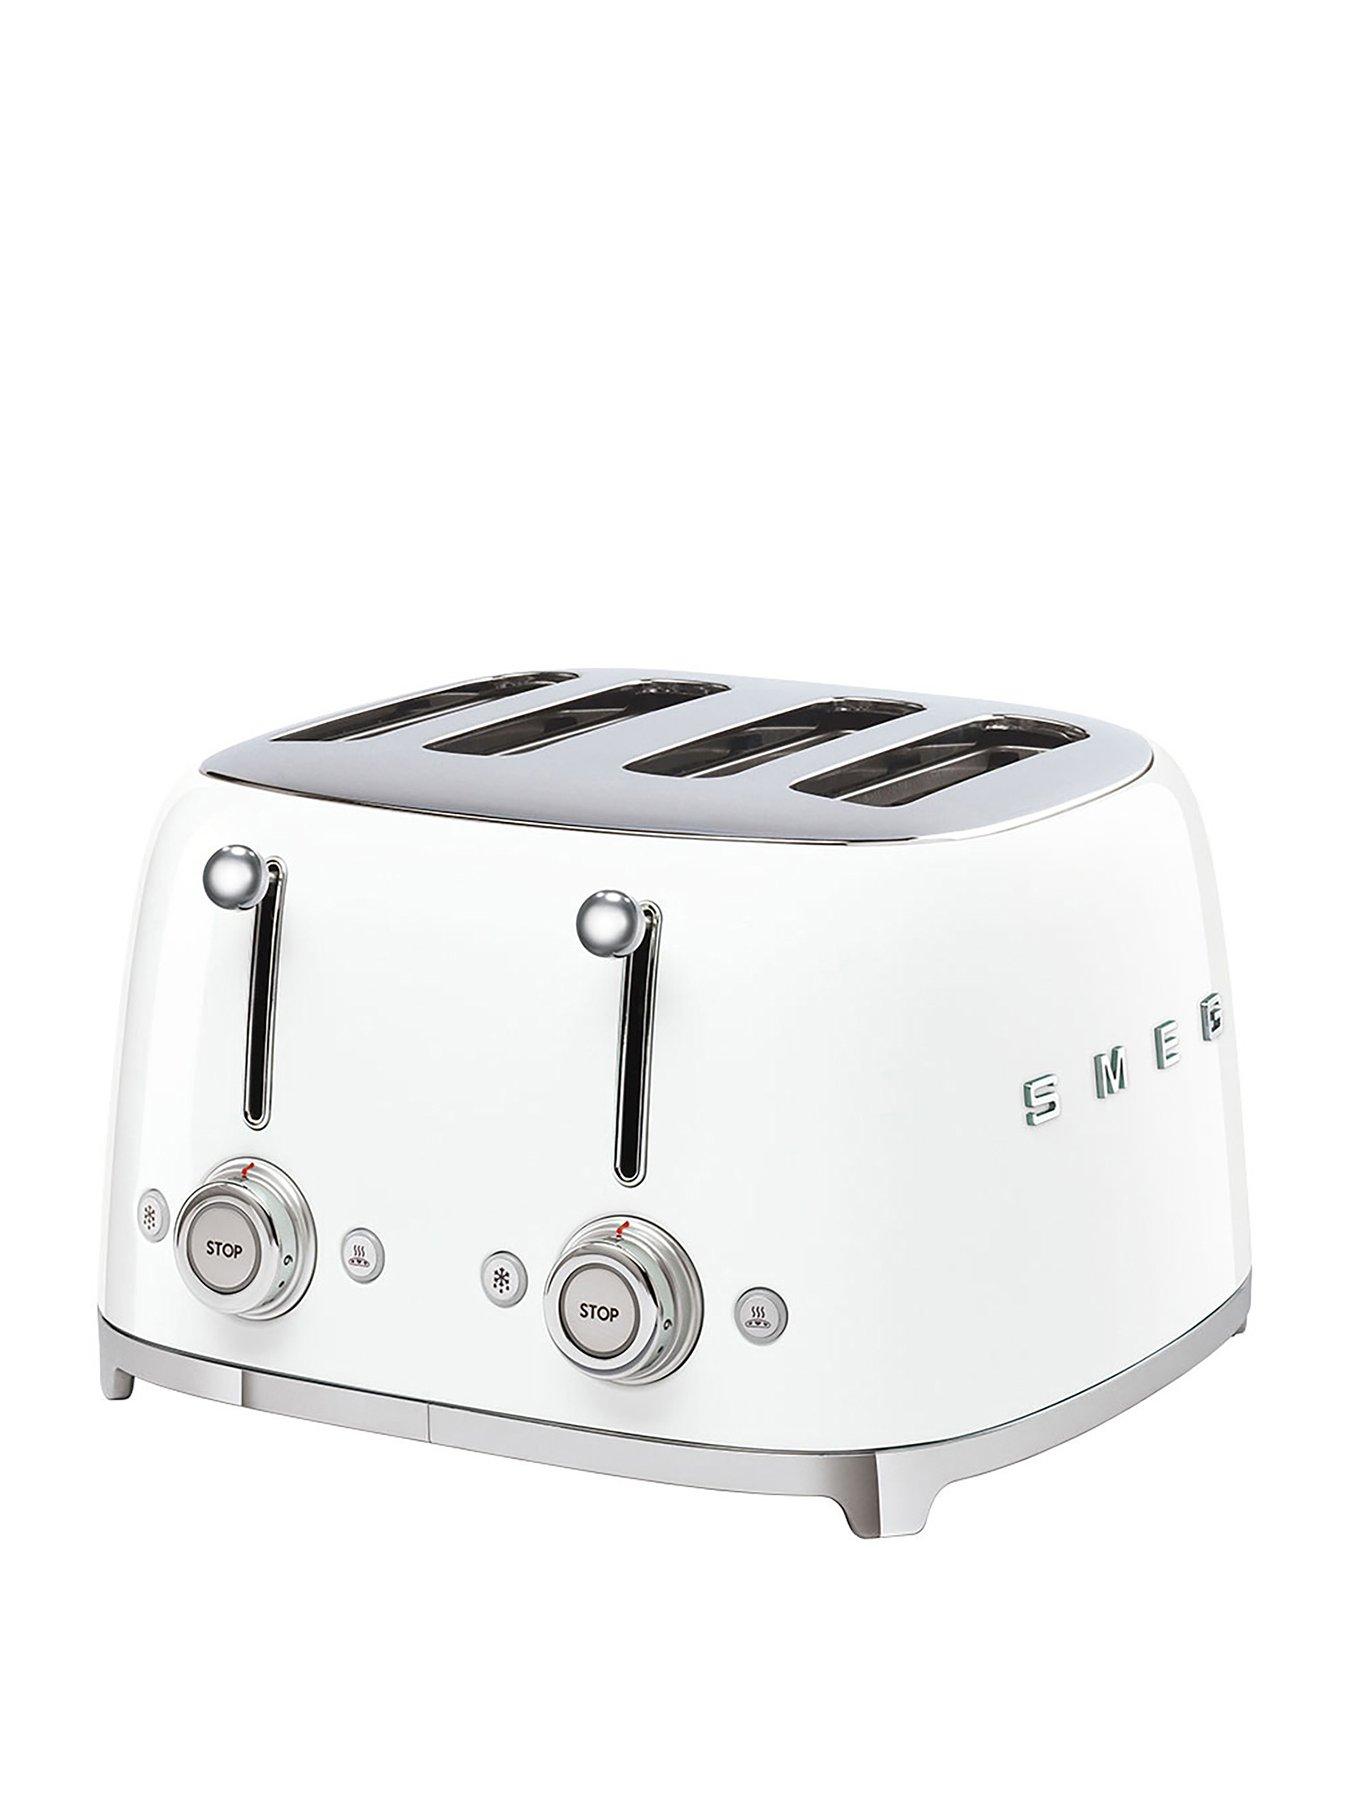 Smeg Tsf03 Retro Style 4 Slice Toaster, 2000W - White